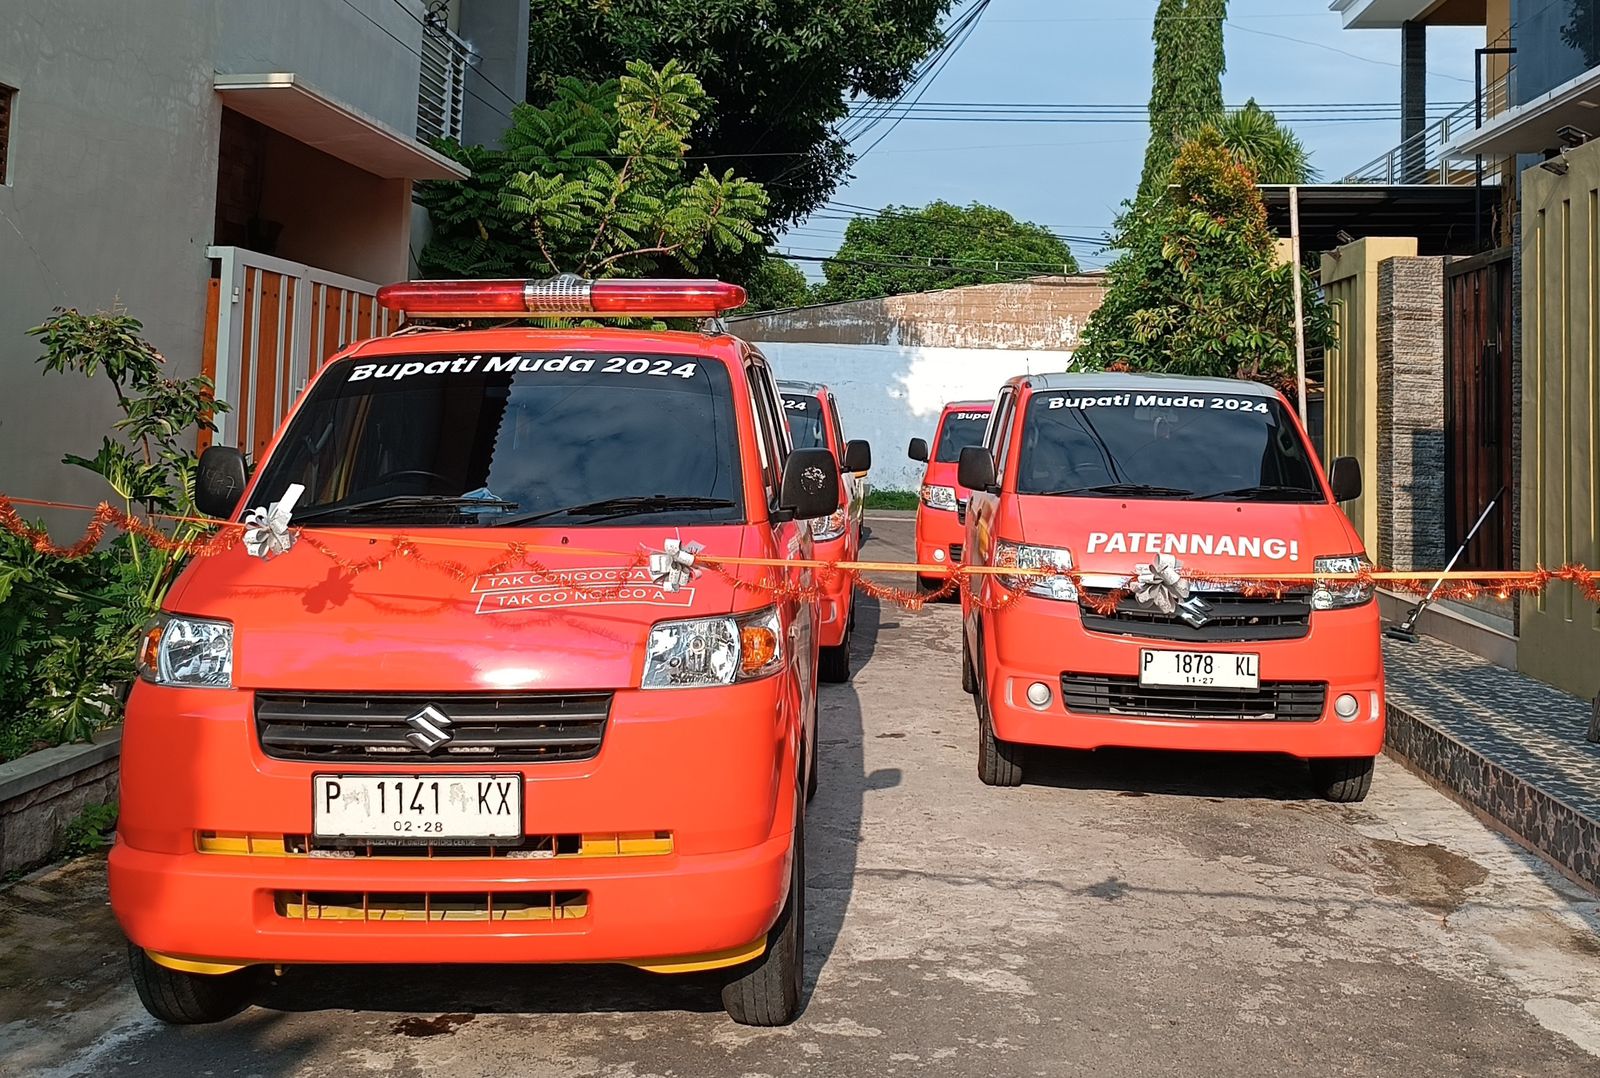 Tim Patennang Luncurkan Mobil Ambulance dan Operasional, Warga: Alhamdulillah, Terimakasih Mas Rio